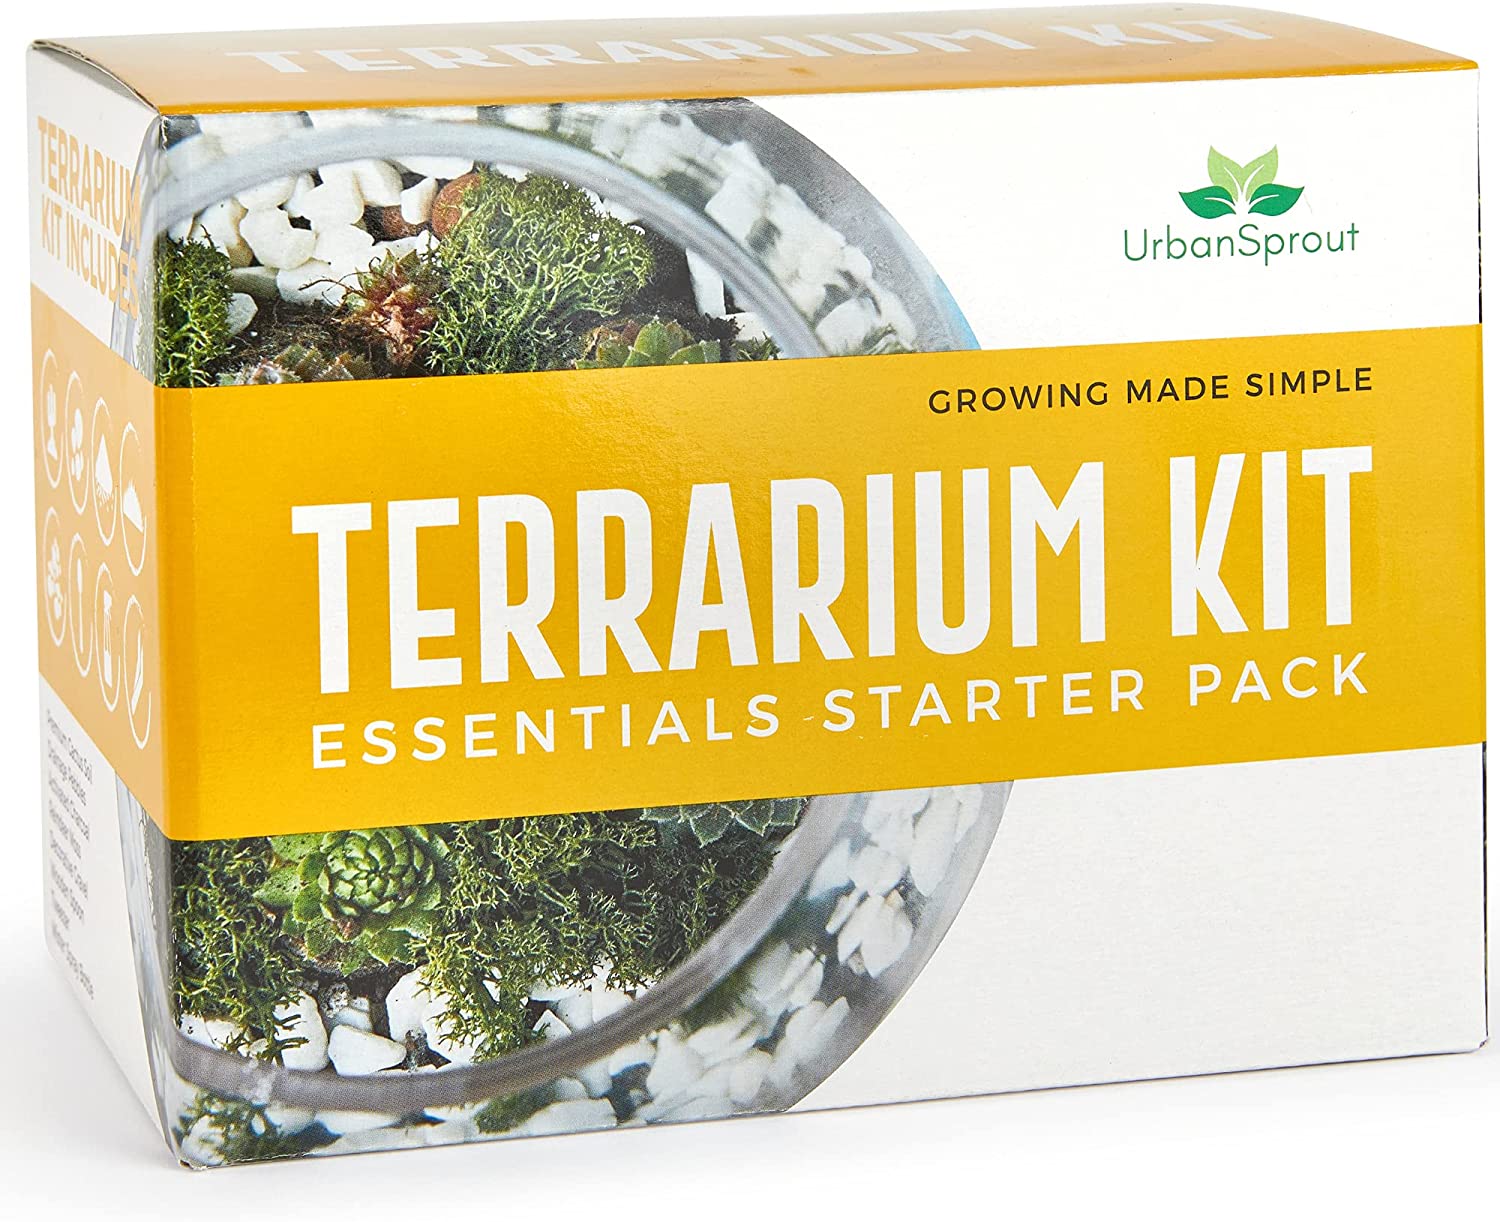 Terrarium kit – Best Seller on Amazon